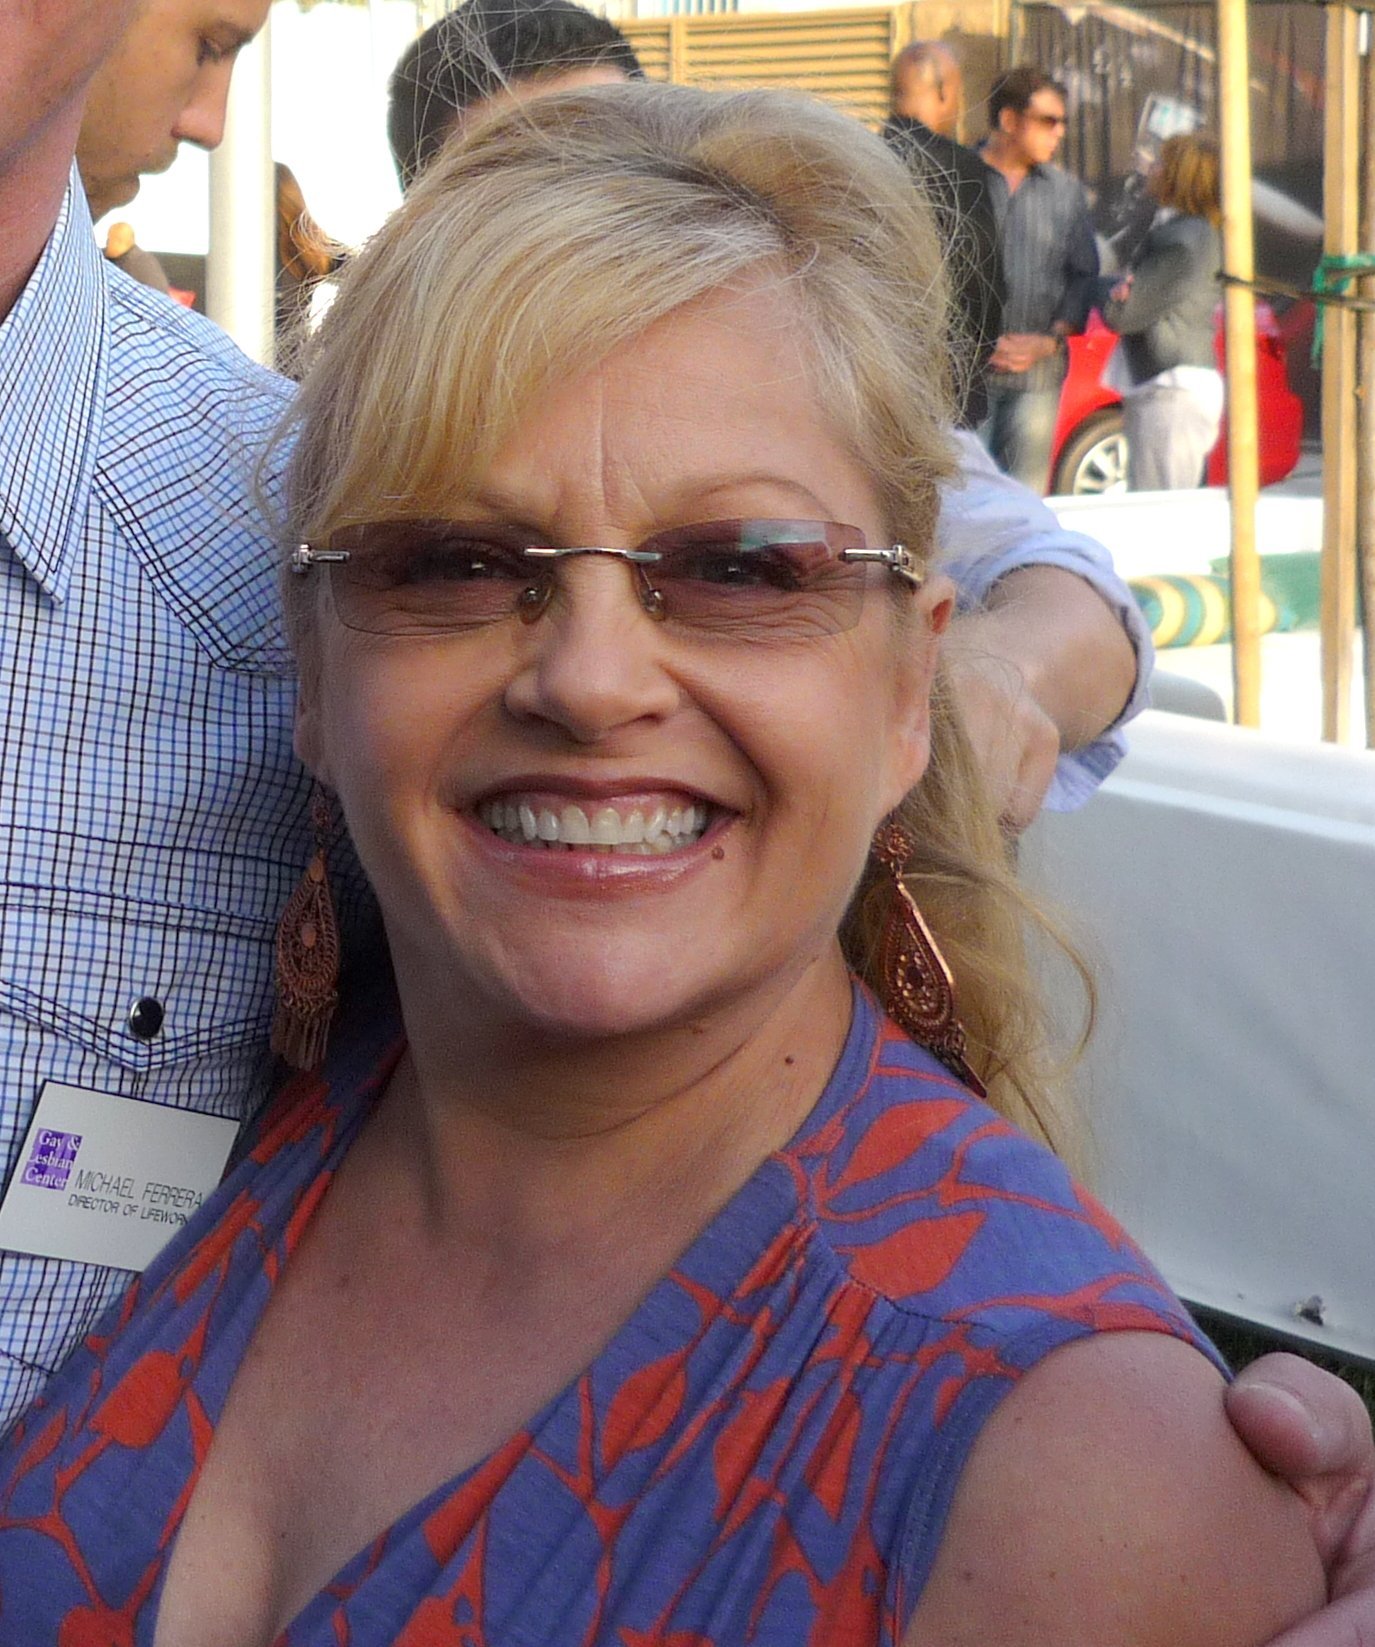 Charlene Tilton en 2010. | Imagen: Wikimedia Commons